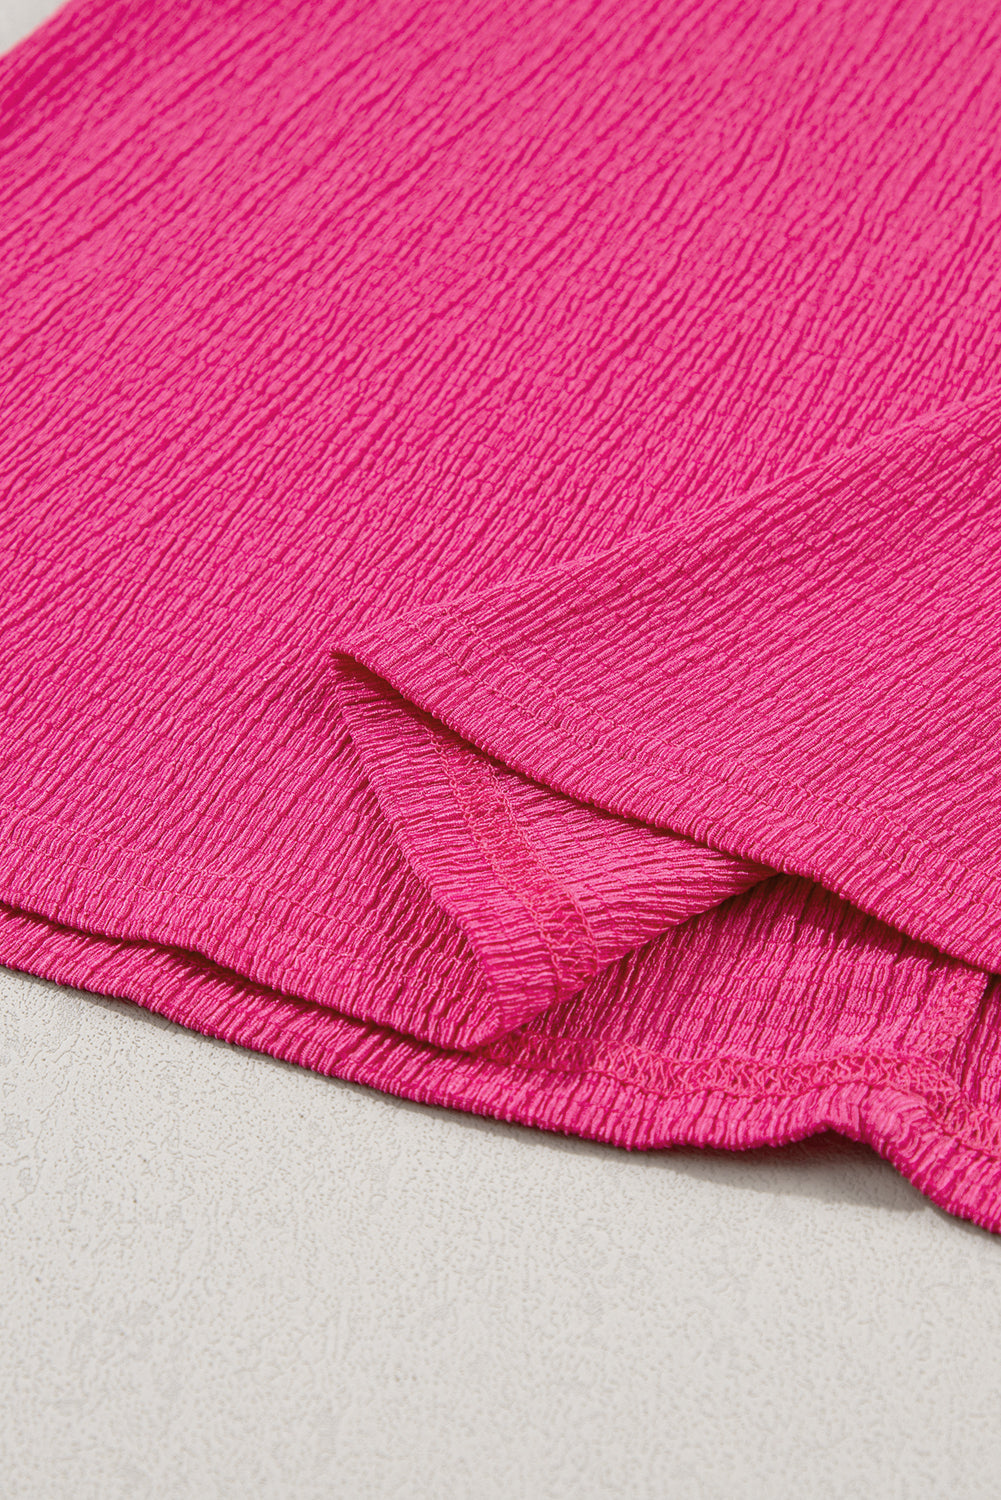 Bright Pink Crinkled V Neck Wide Sleeve T-shirt